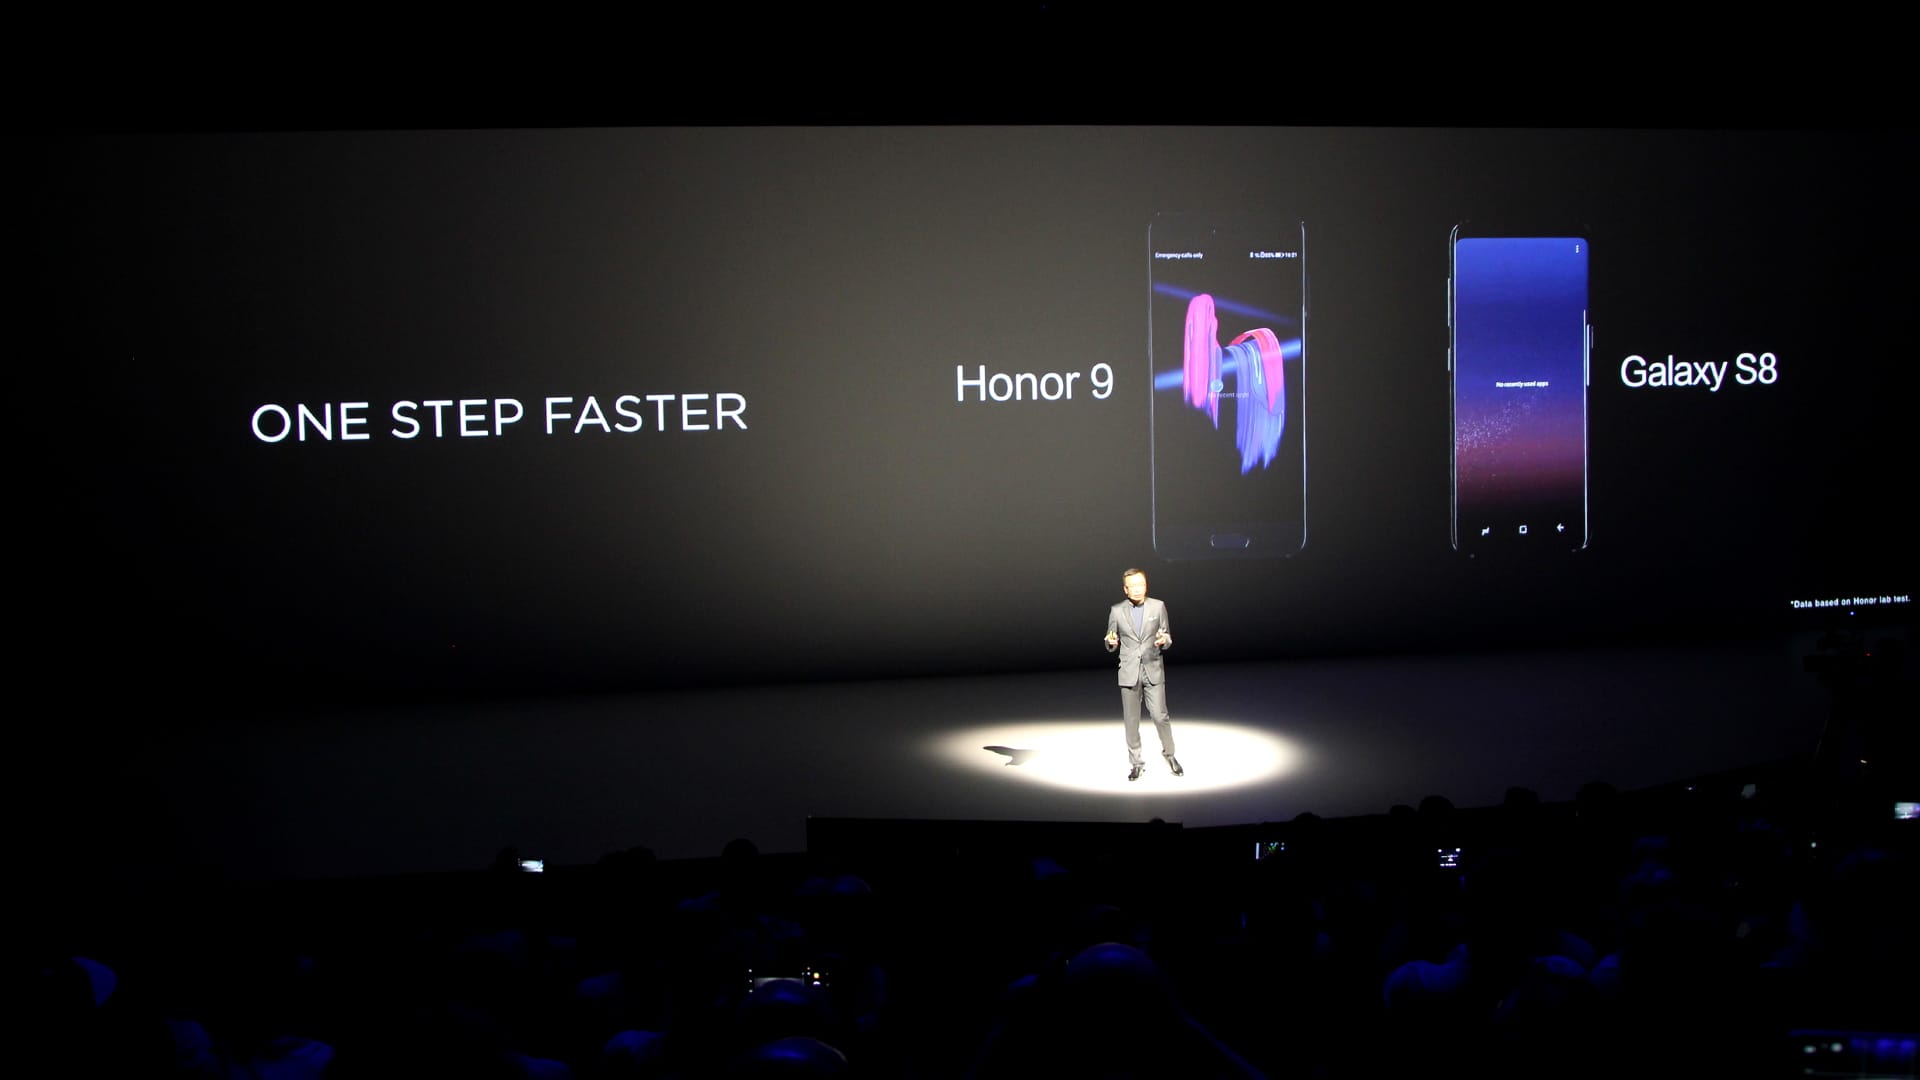 Bei diversen Tests schlug das Honor 9 das Galaxy S8 von Samsung